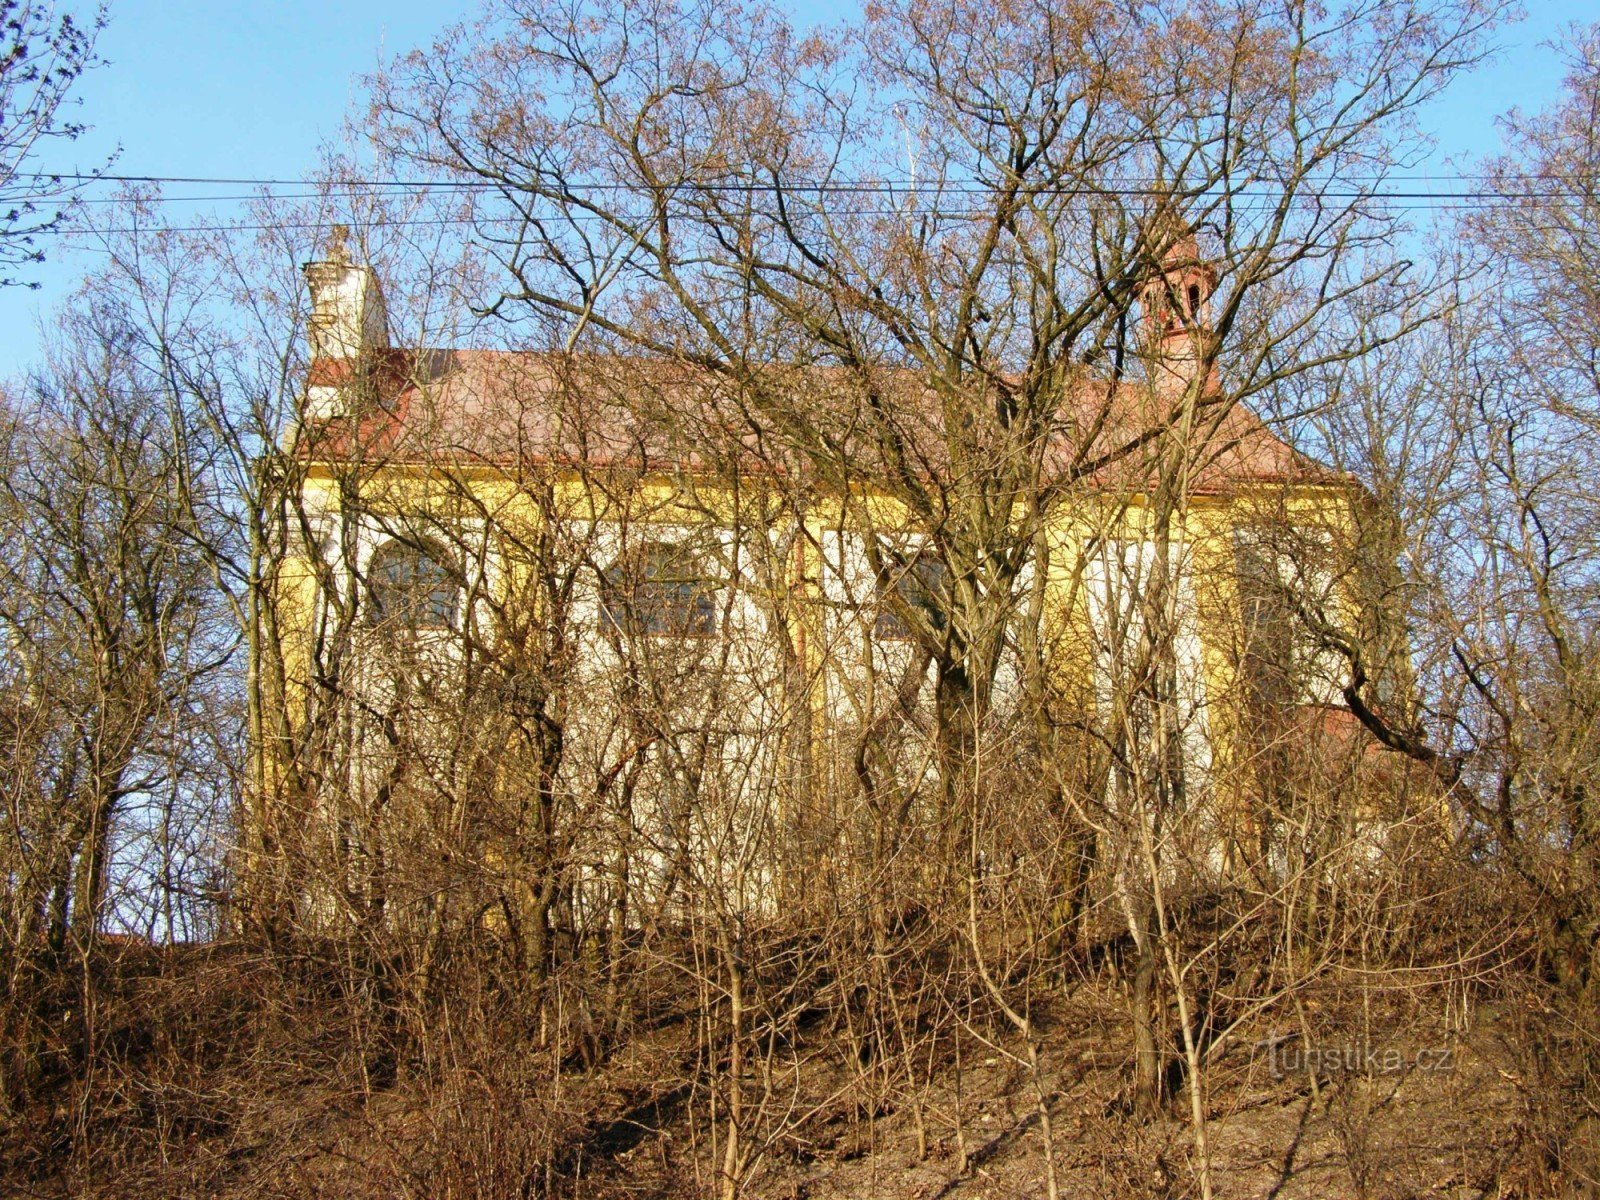 Popovice - Jungfru Marias födelsekyrka